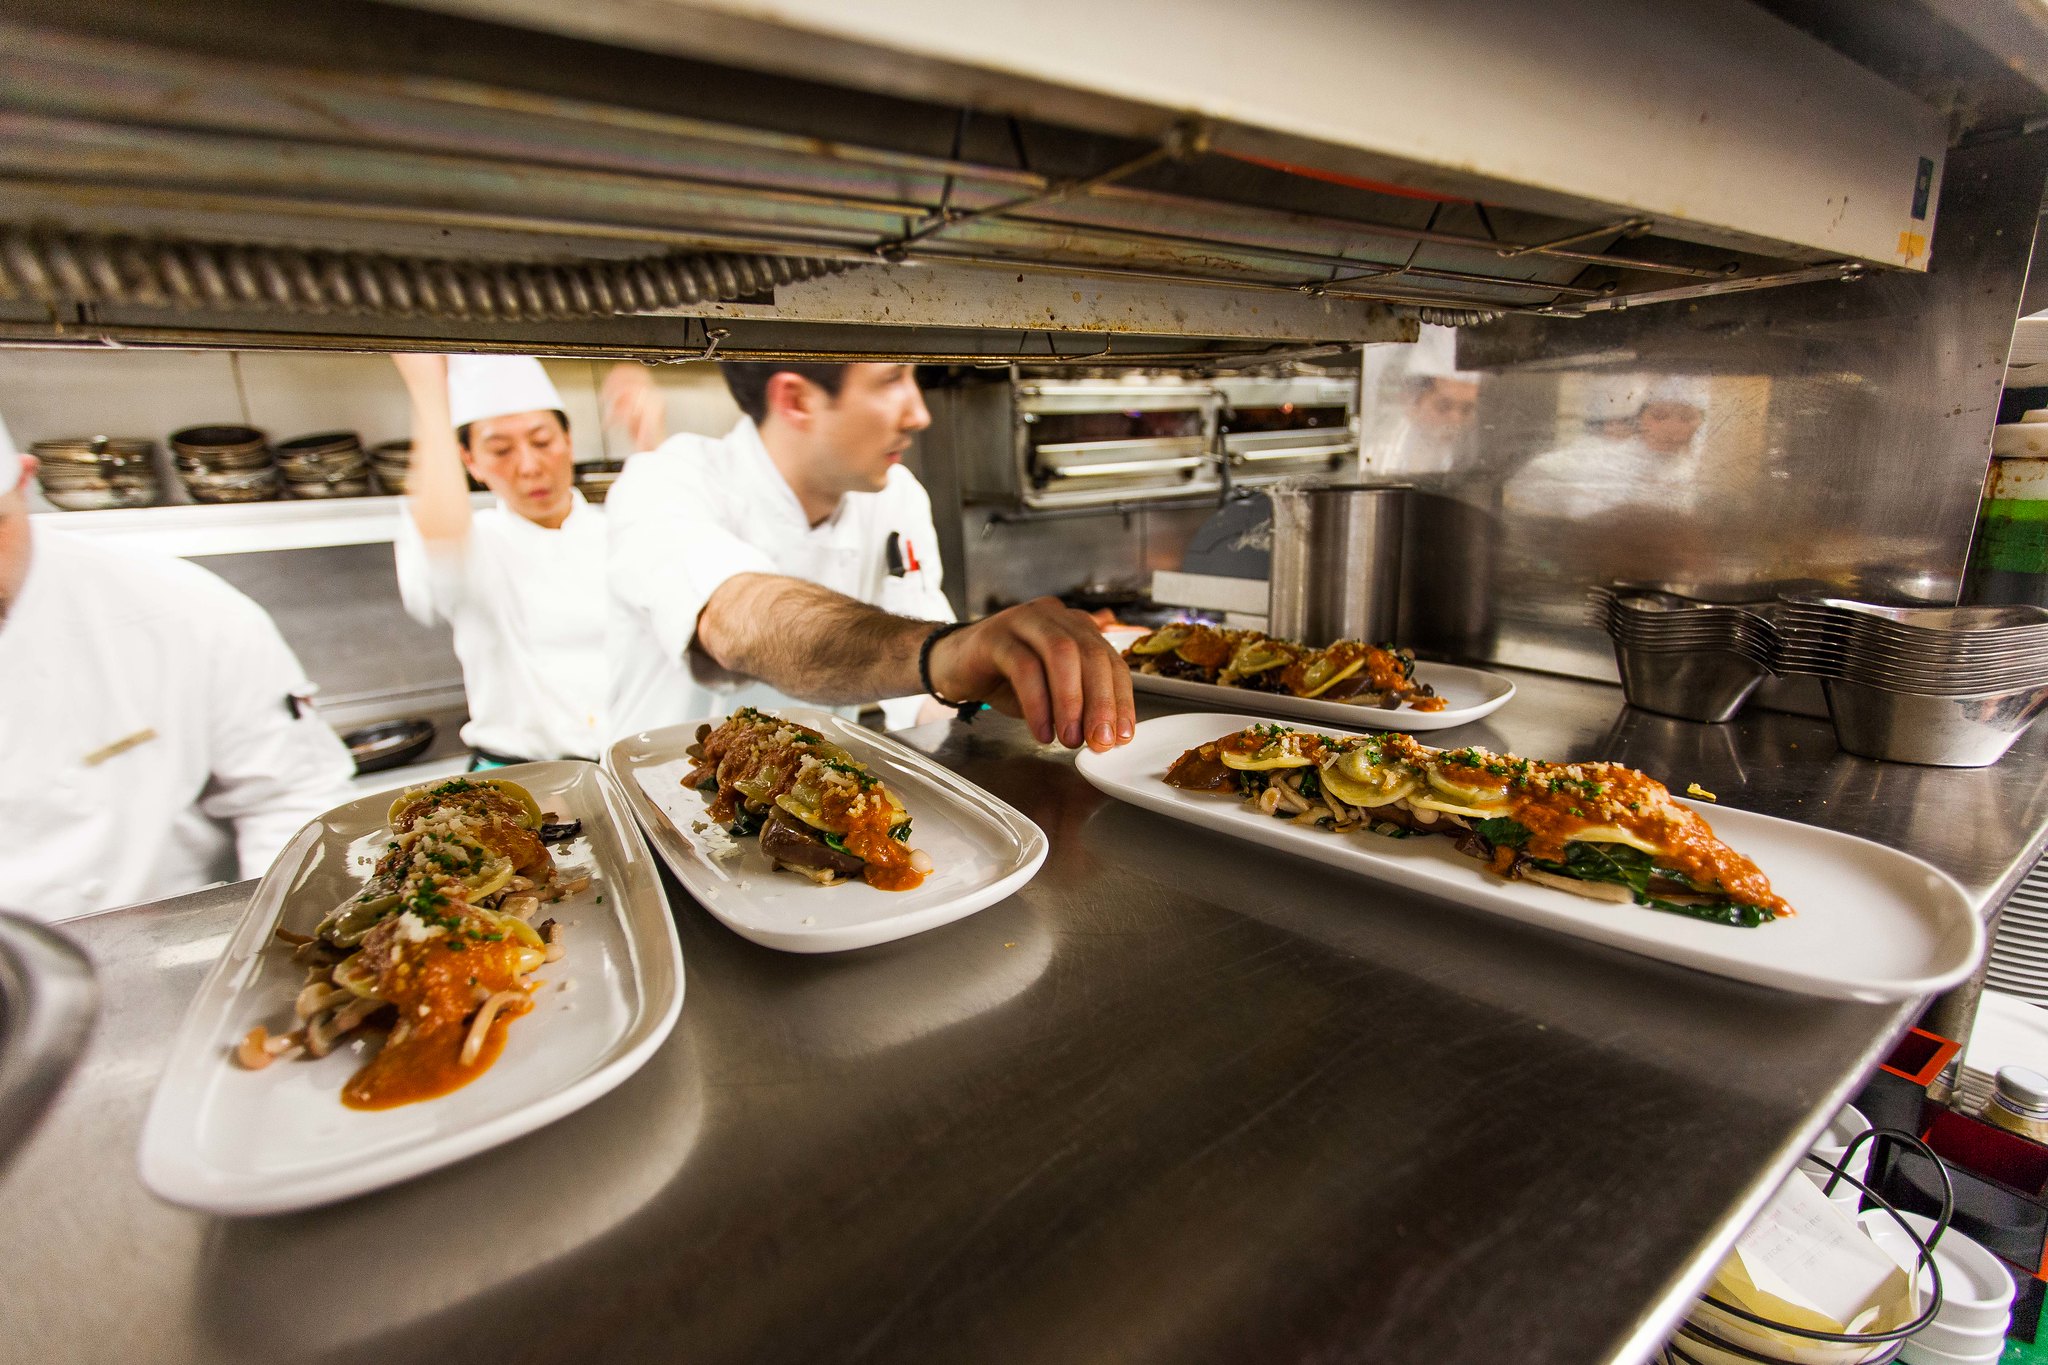 Un chef pone platos de comida gourmet en el paso a través de una cocina ocupada.